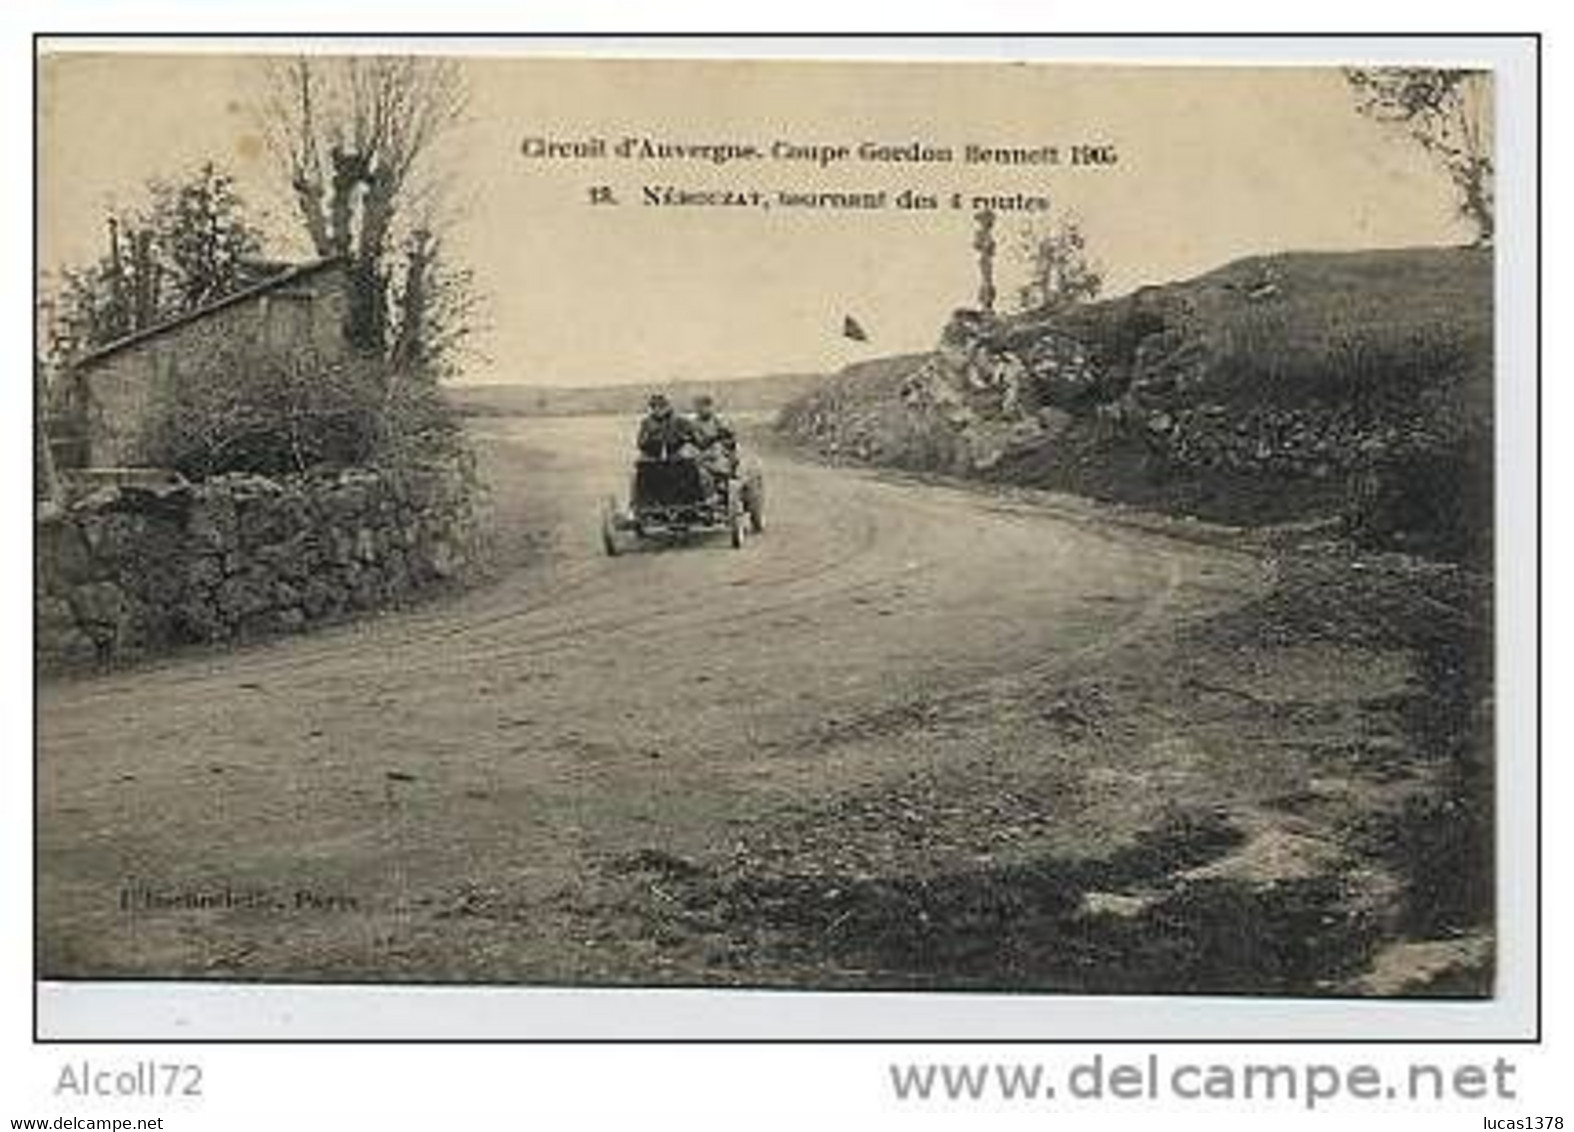 Circuit D'Auvergne.Coupe Gordon Bennet 1905.18.Nébouzat,tournant Des 4 Routes - Rally Racing